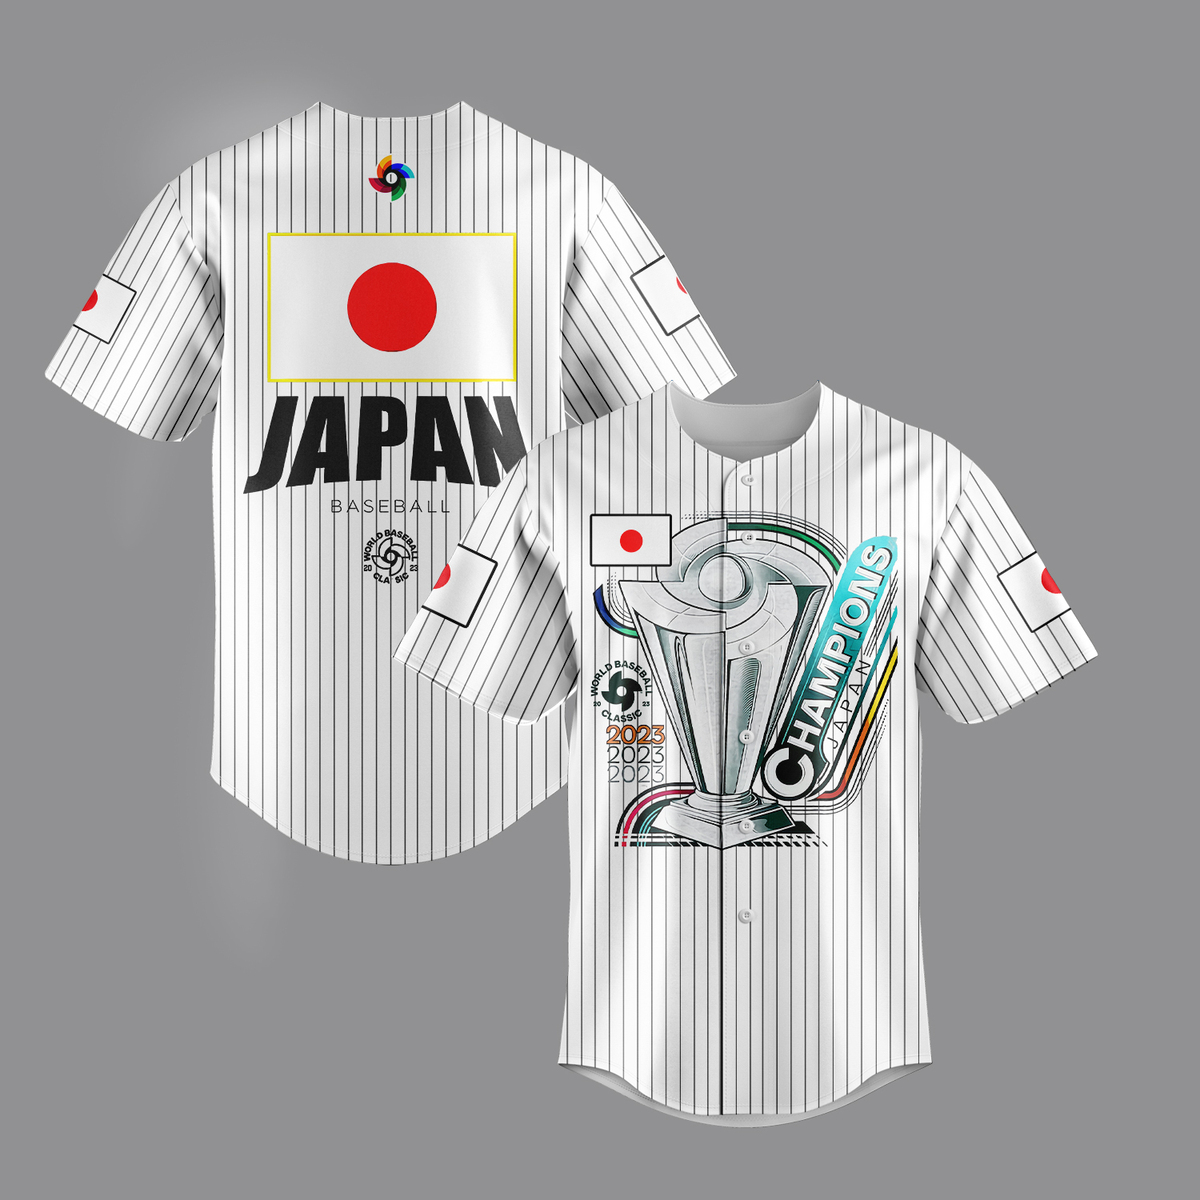  Men's #16 Ohtani Jersey Japan Samurai White Black